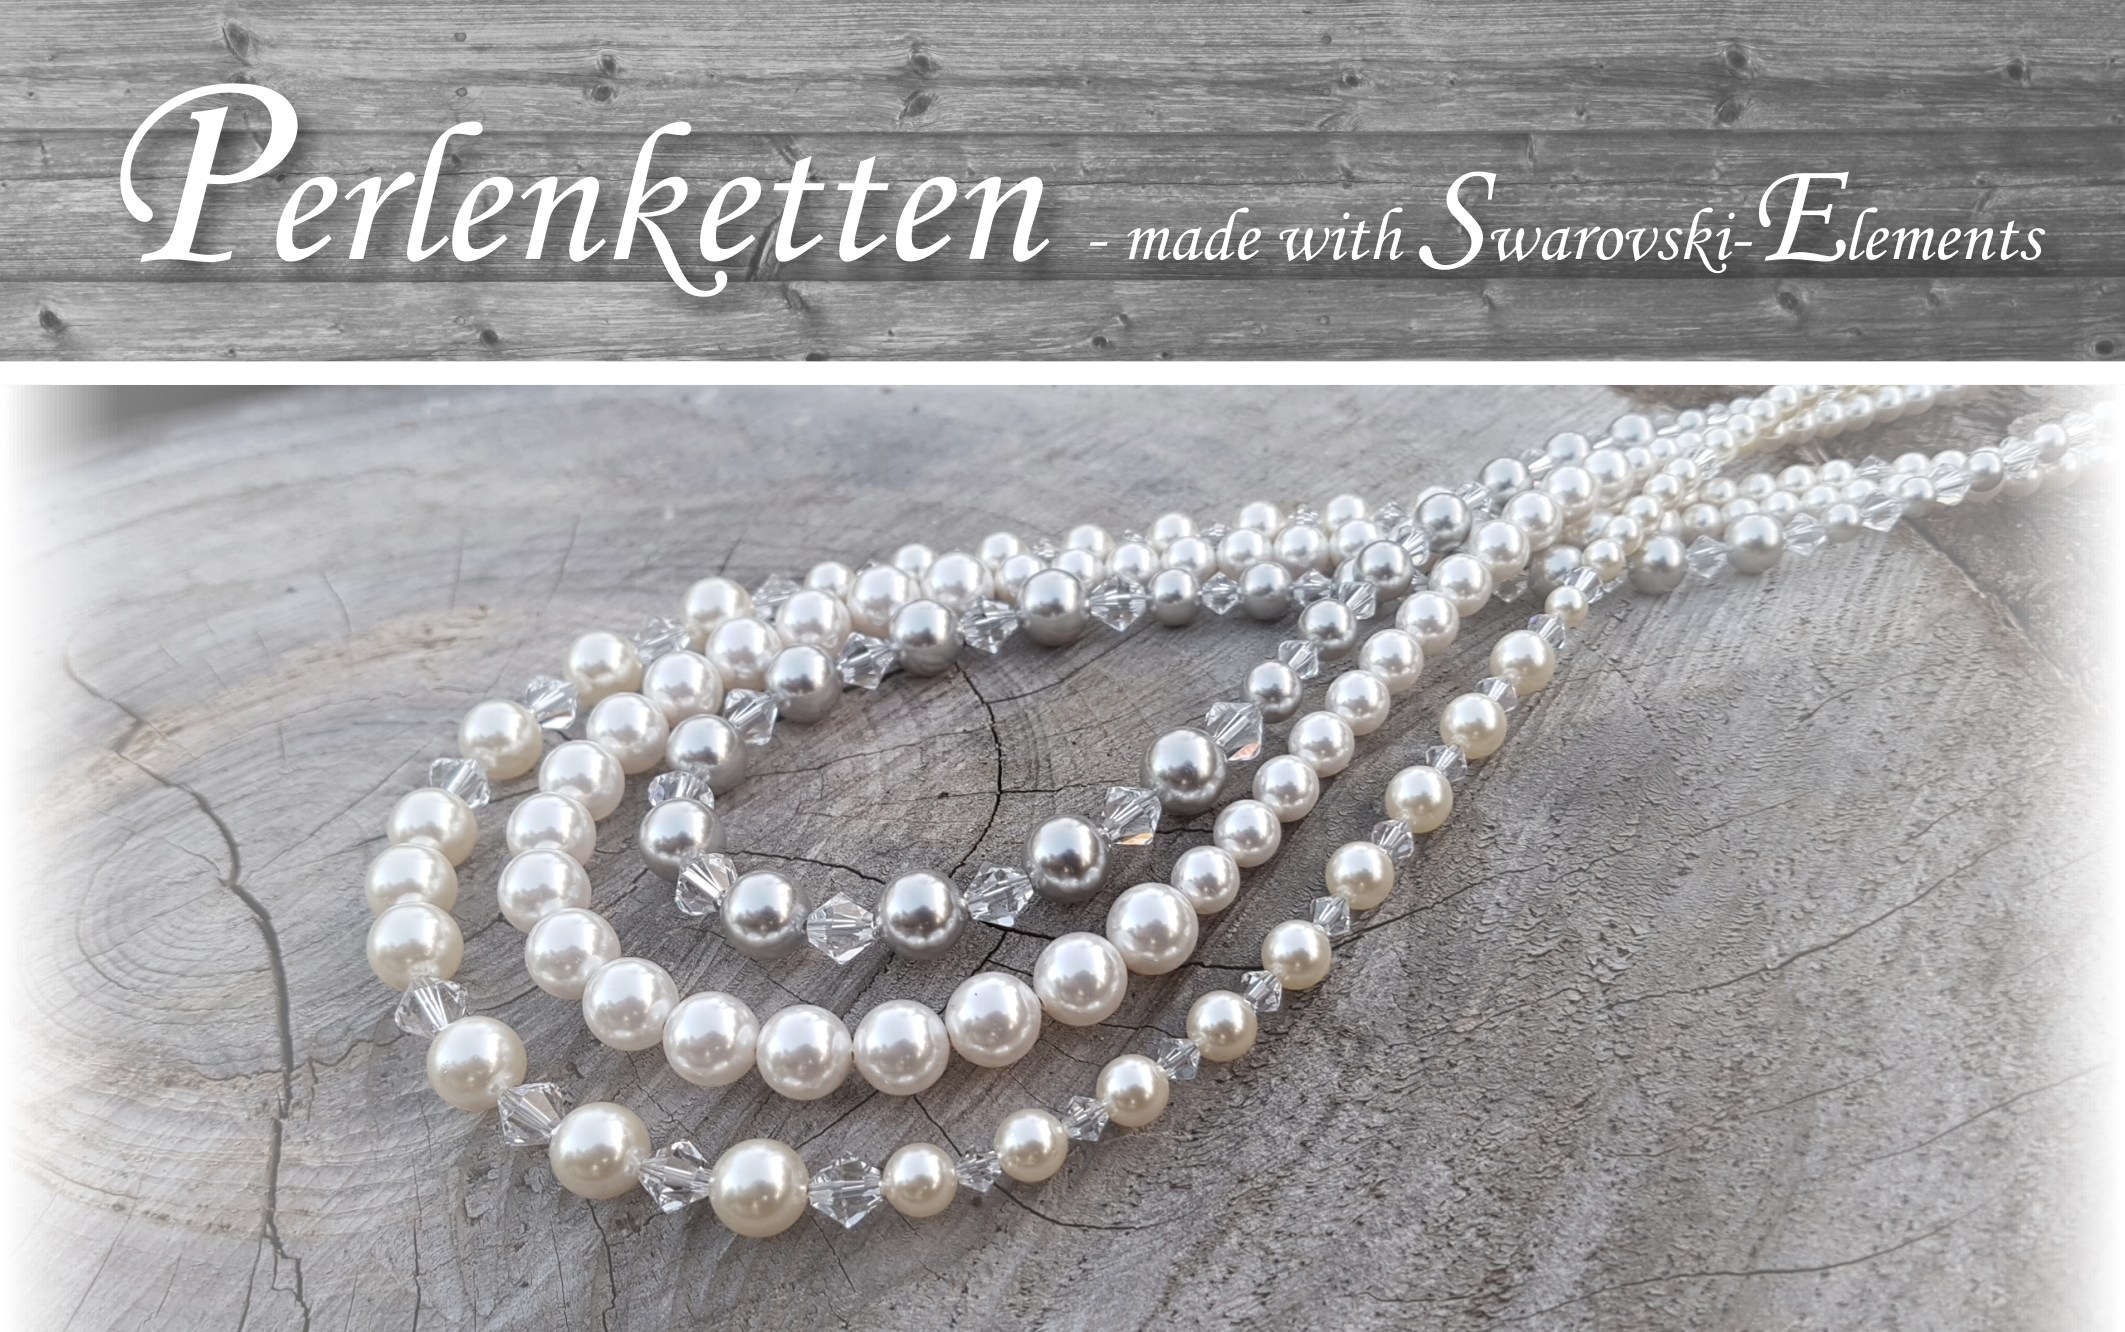 Perlenketten-Swarovski-Swarovskiperlen-Swarovskikristalle-Trachtenschmuck-Dirndlschmuck-Brautschmuck-Brautcollier-Brautkette-weiss-creme-silber-edel-außergewöhnlich